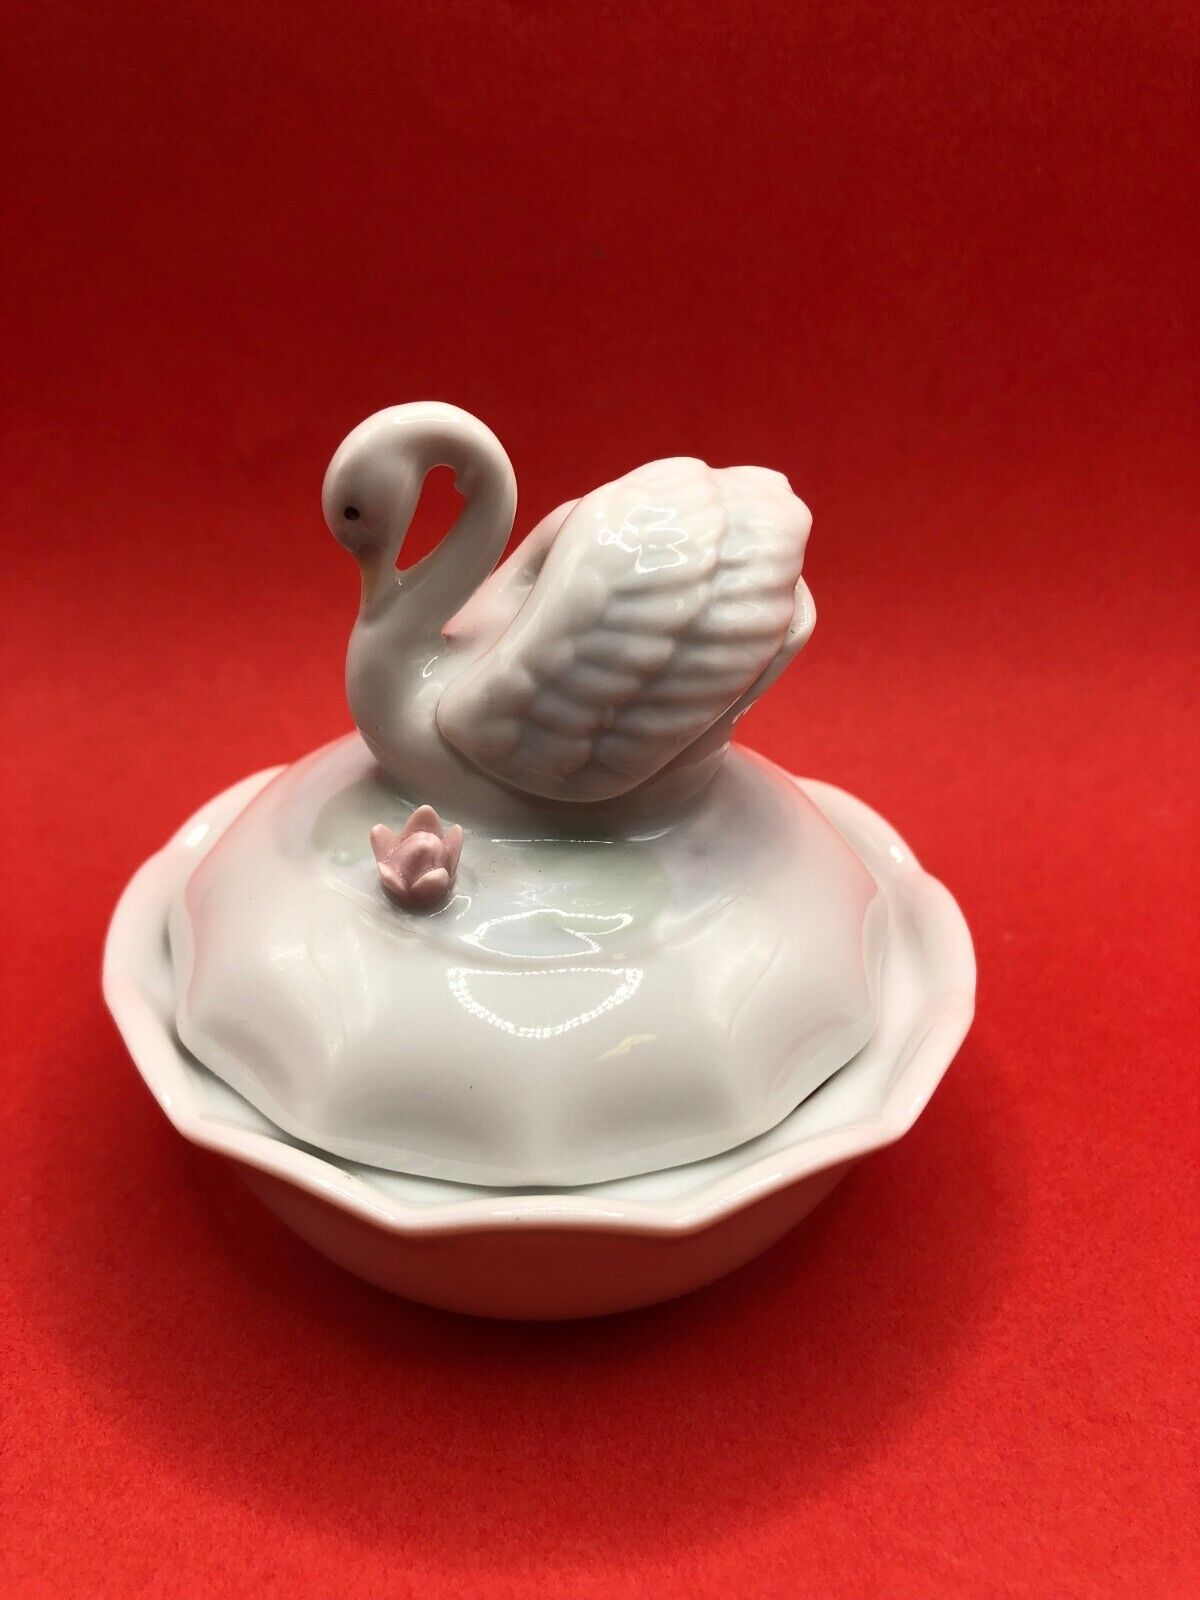 Vintage Swan trinket dish with lid